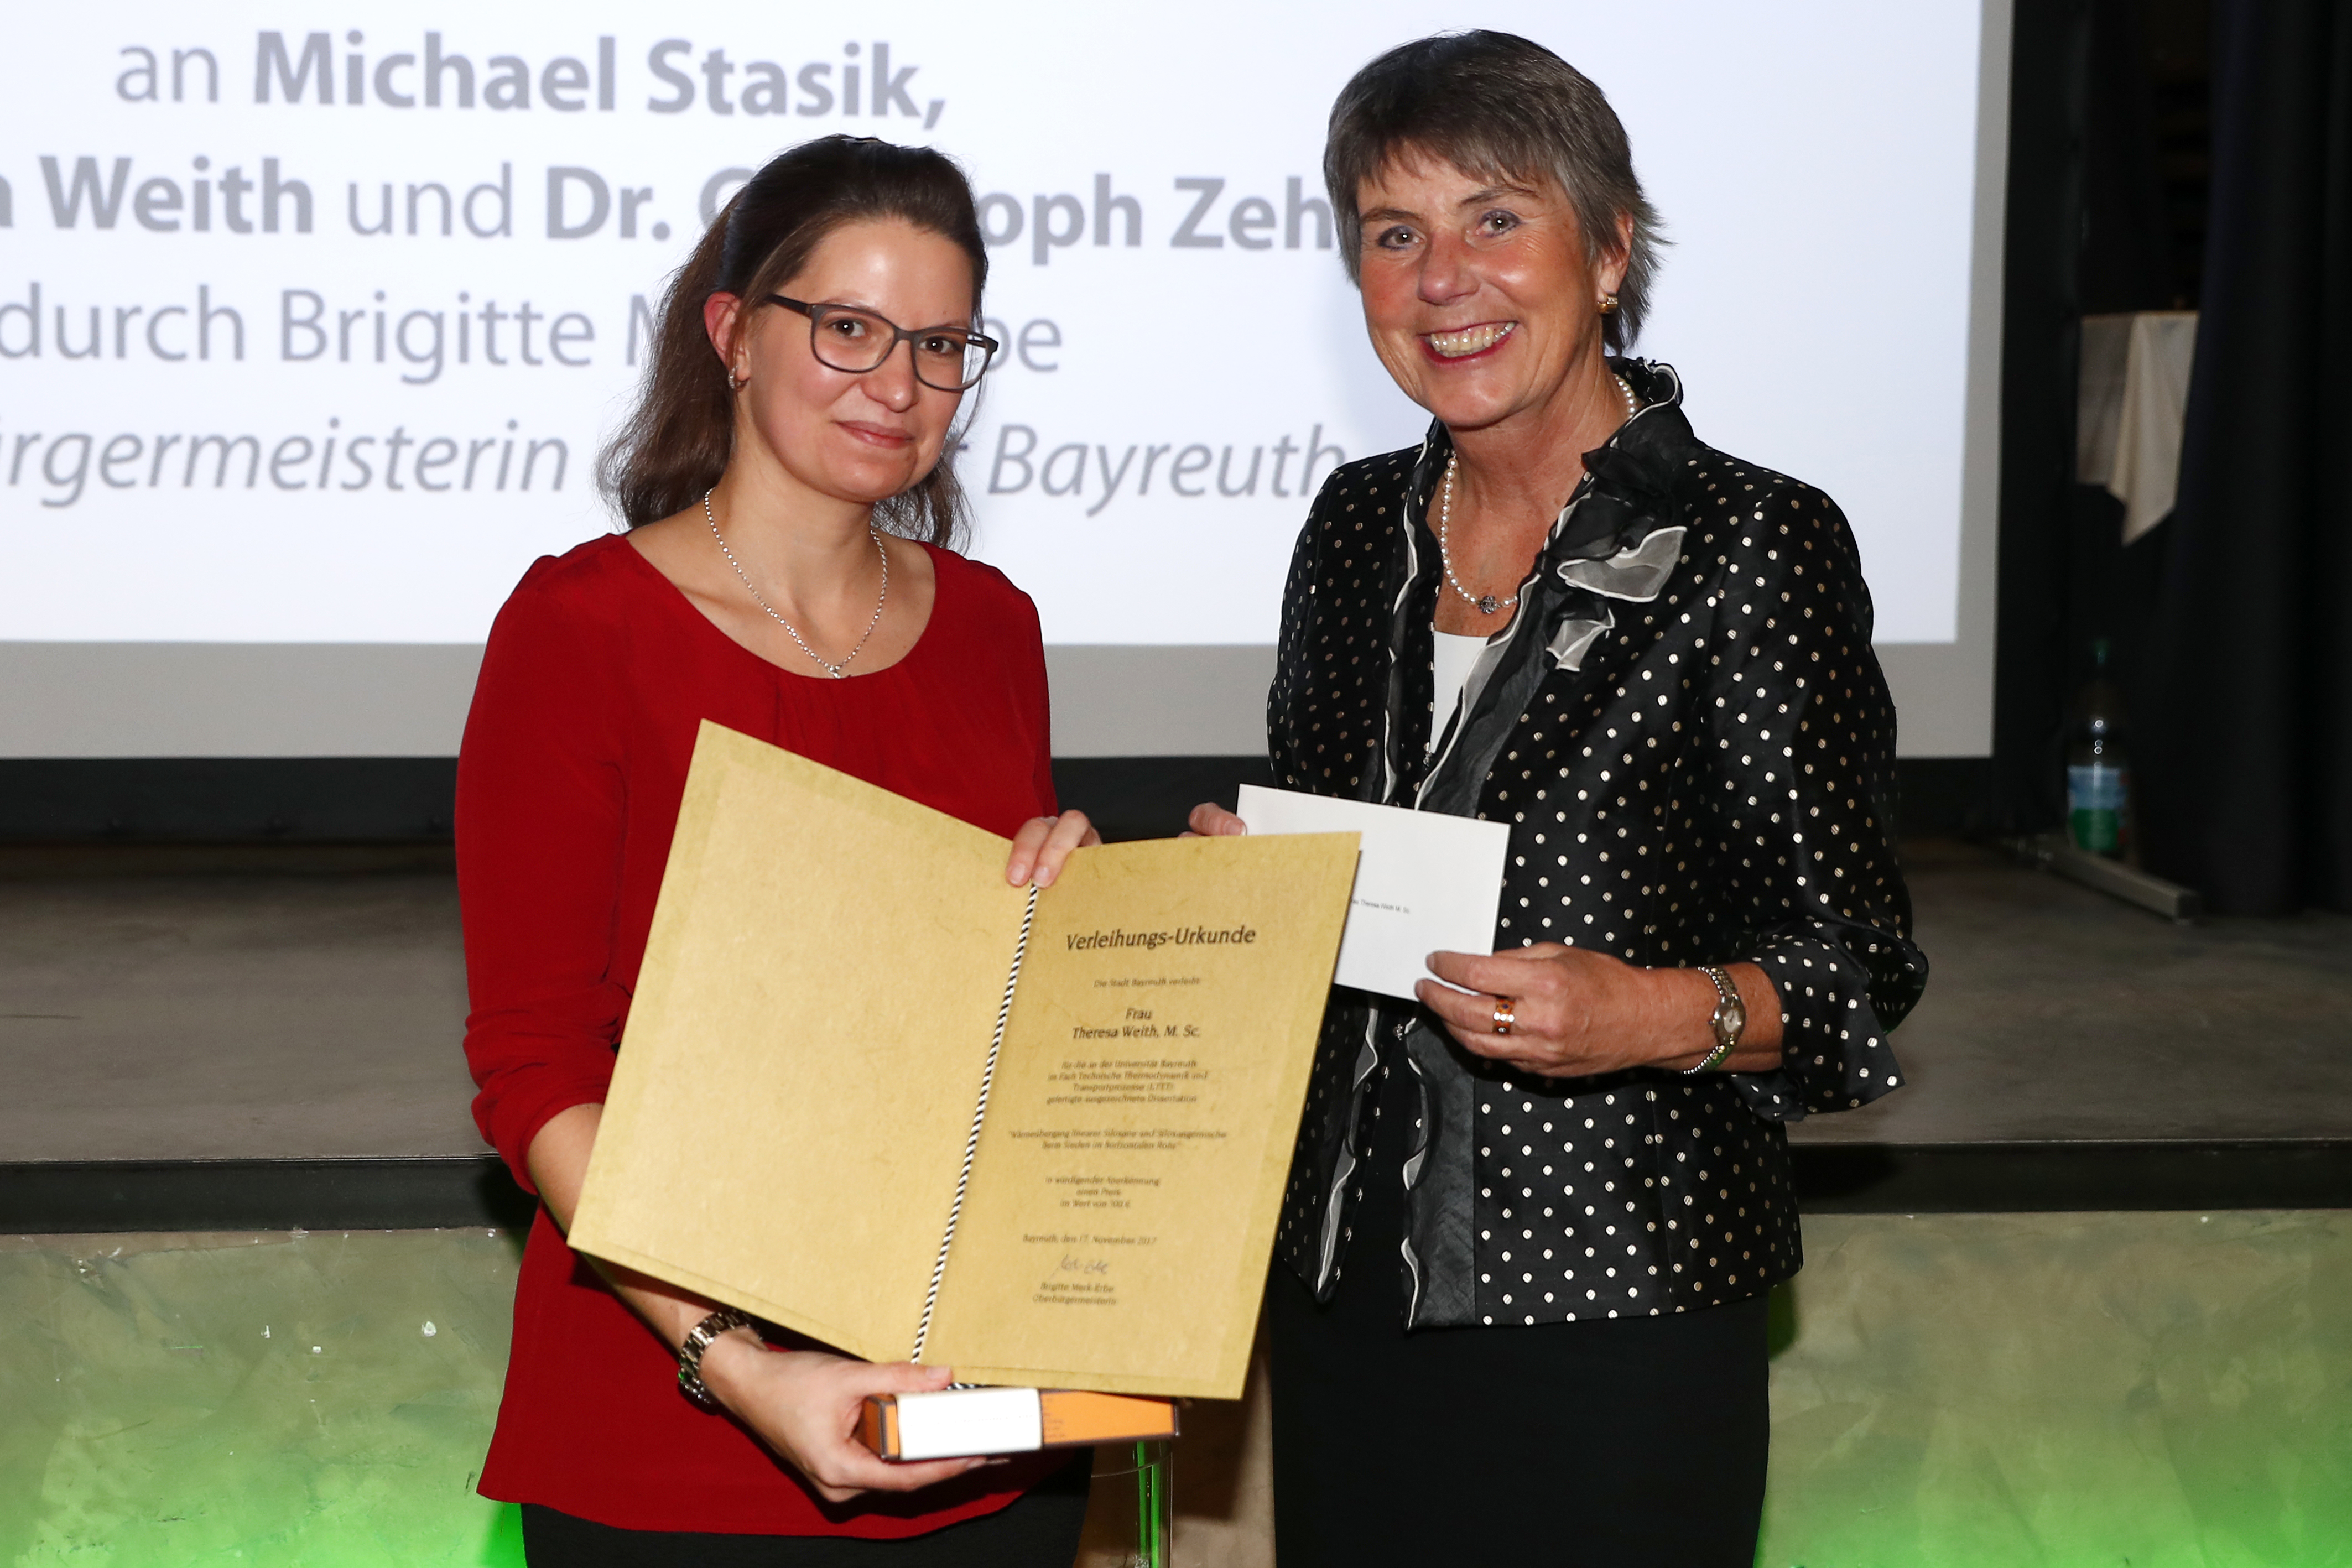 Verleihung des Preises der Stadt Bayreuth an Theresa Weith durch Brigitte Merk-Erbe